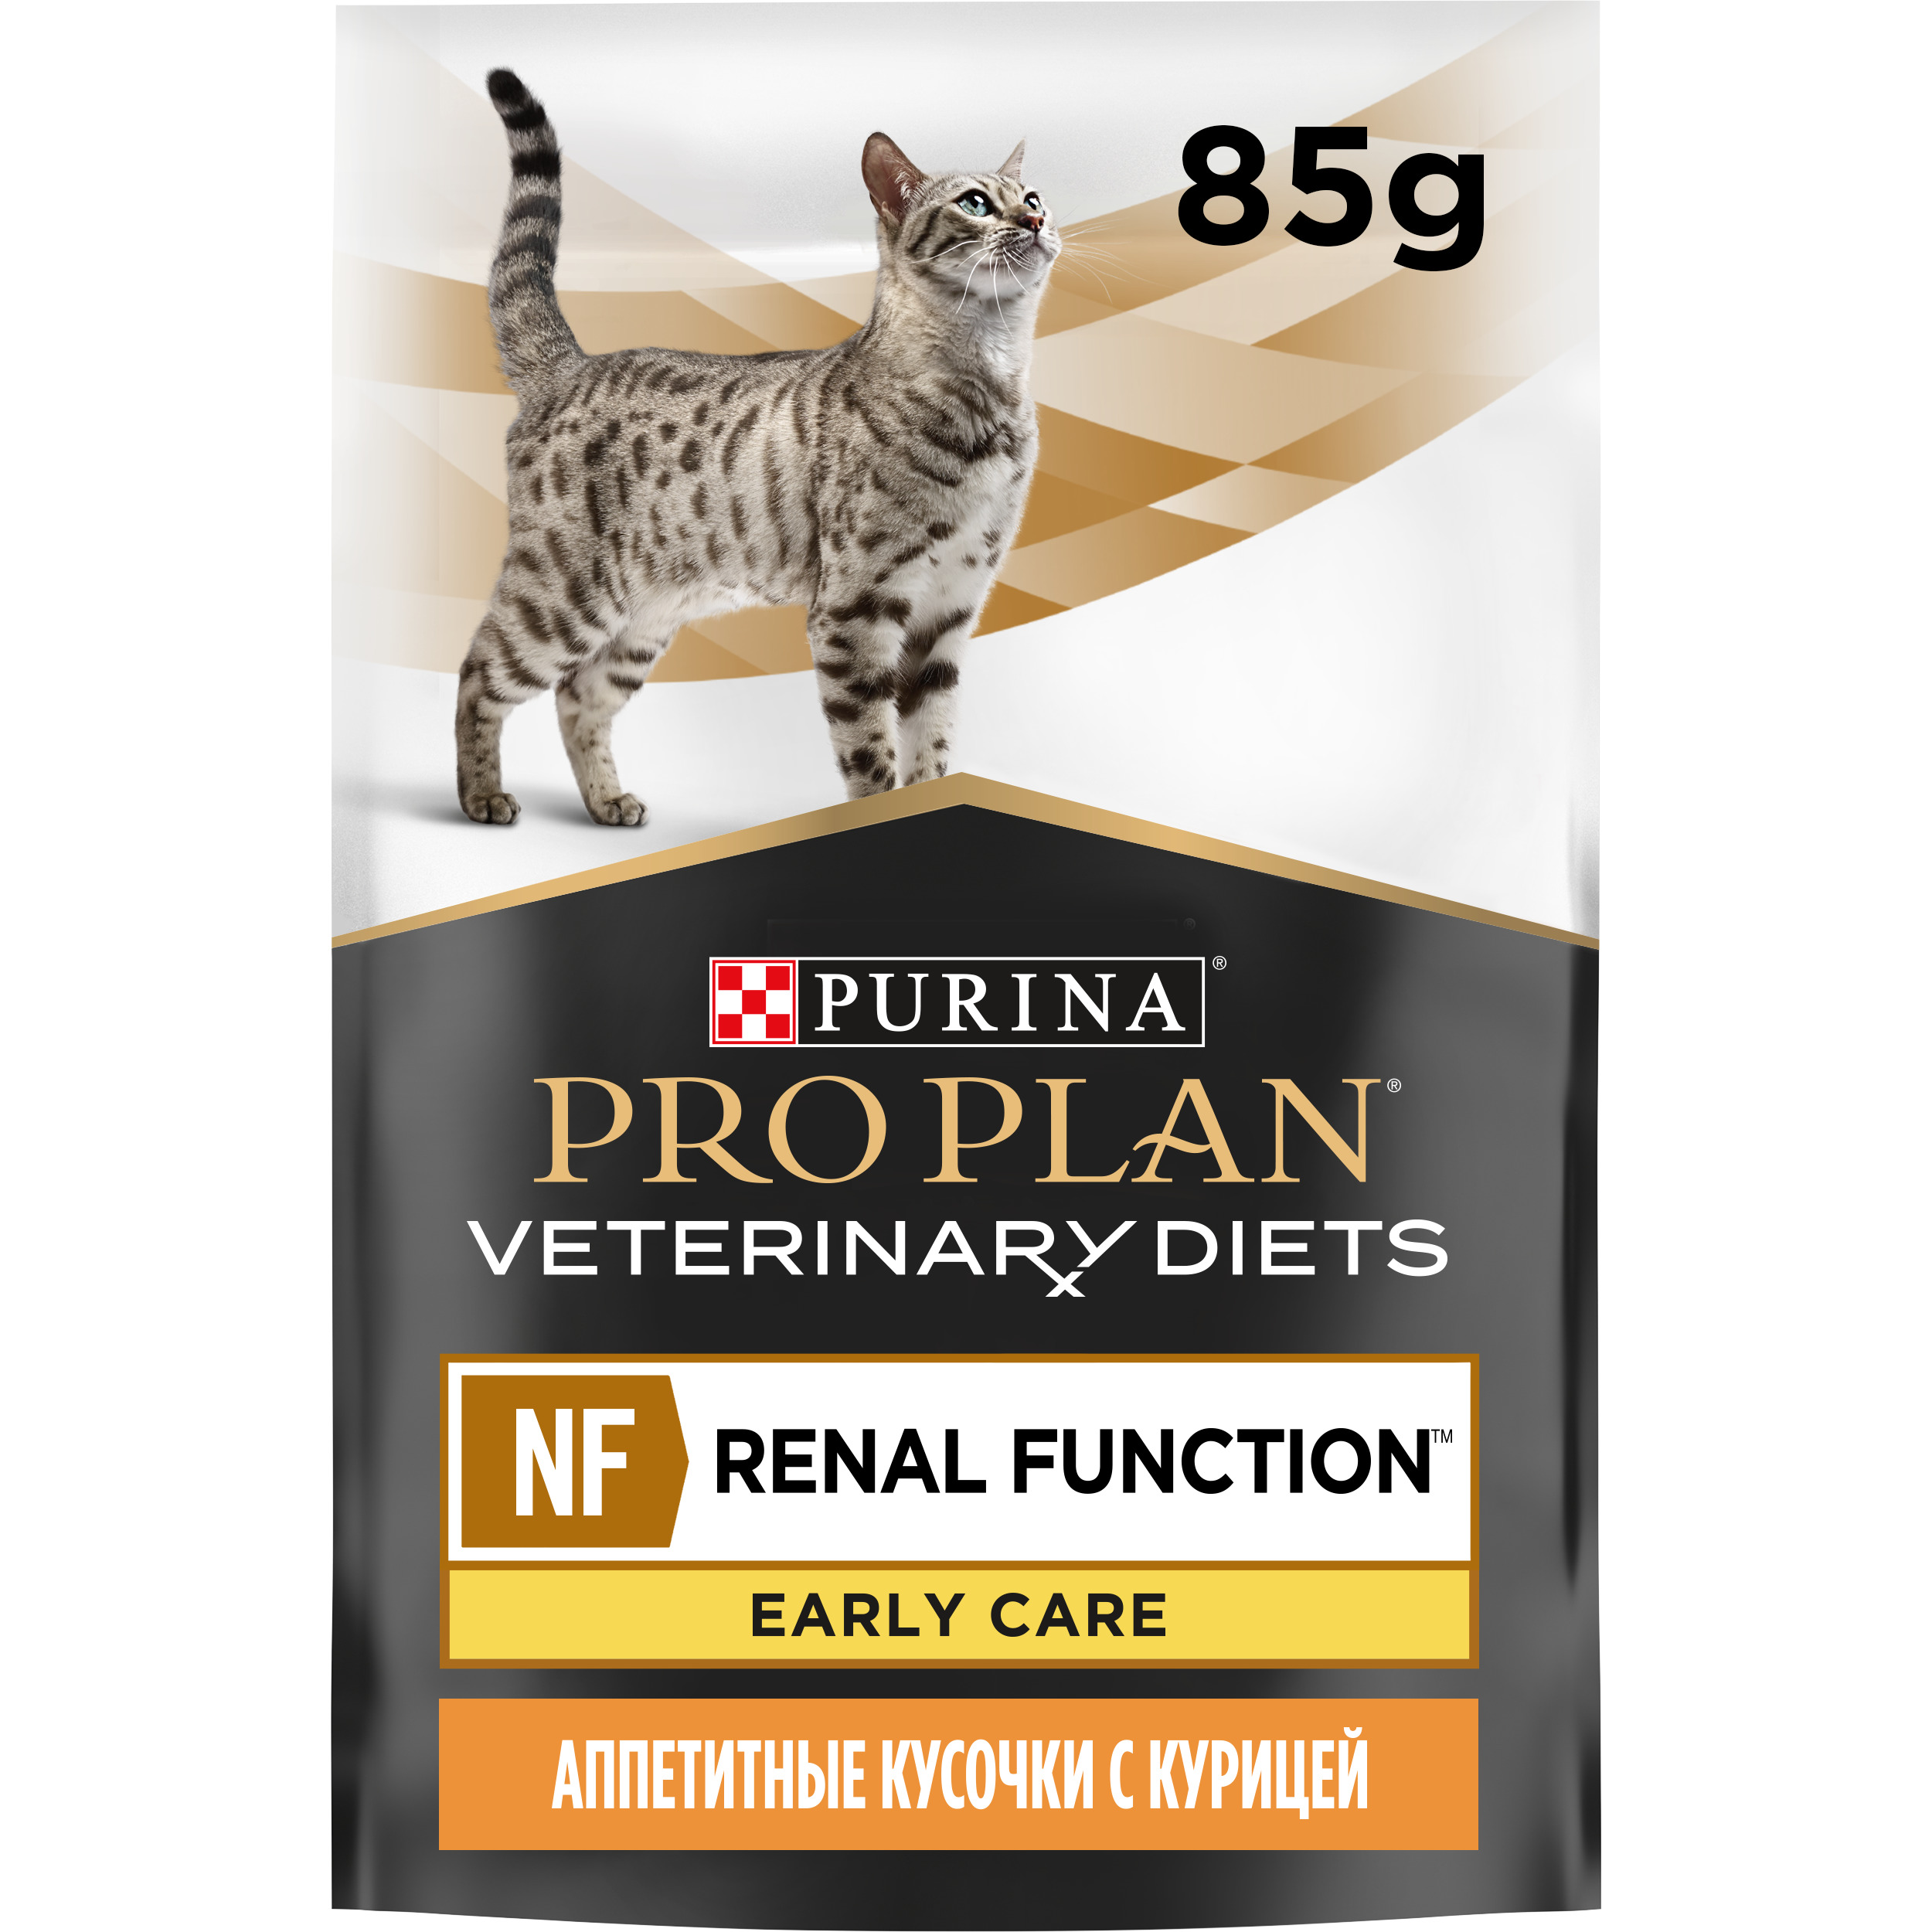 Pro Plan renal early Care. Purina Pro Plan renal function для кошек. 2 Сухой корм для кошек Pro Plan (NF) renal function. Pro Plan Veterinary Diets renal function для кошек. Pro plan nf renal function advanced care